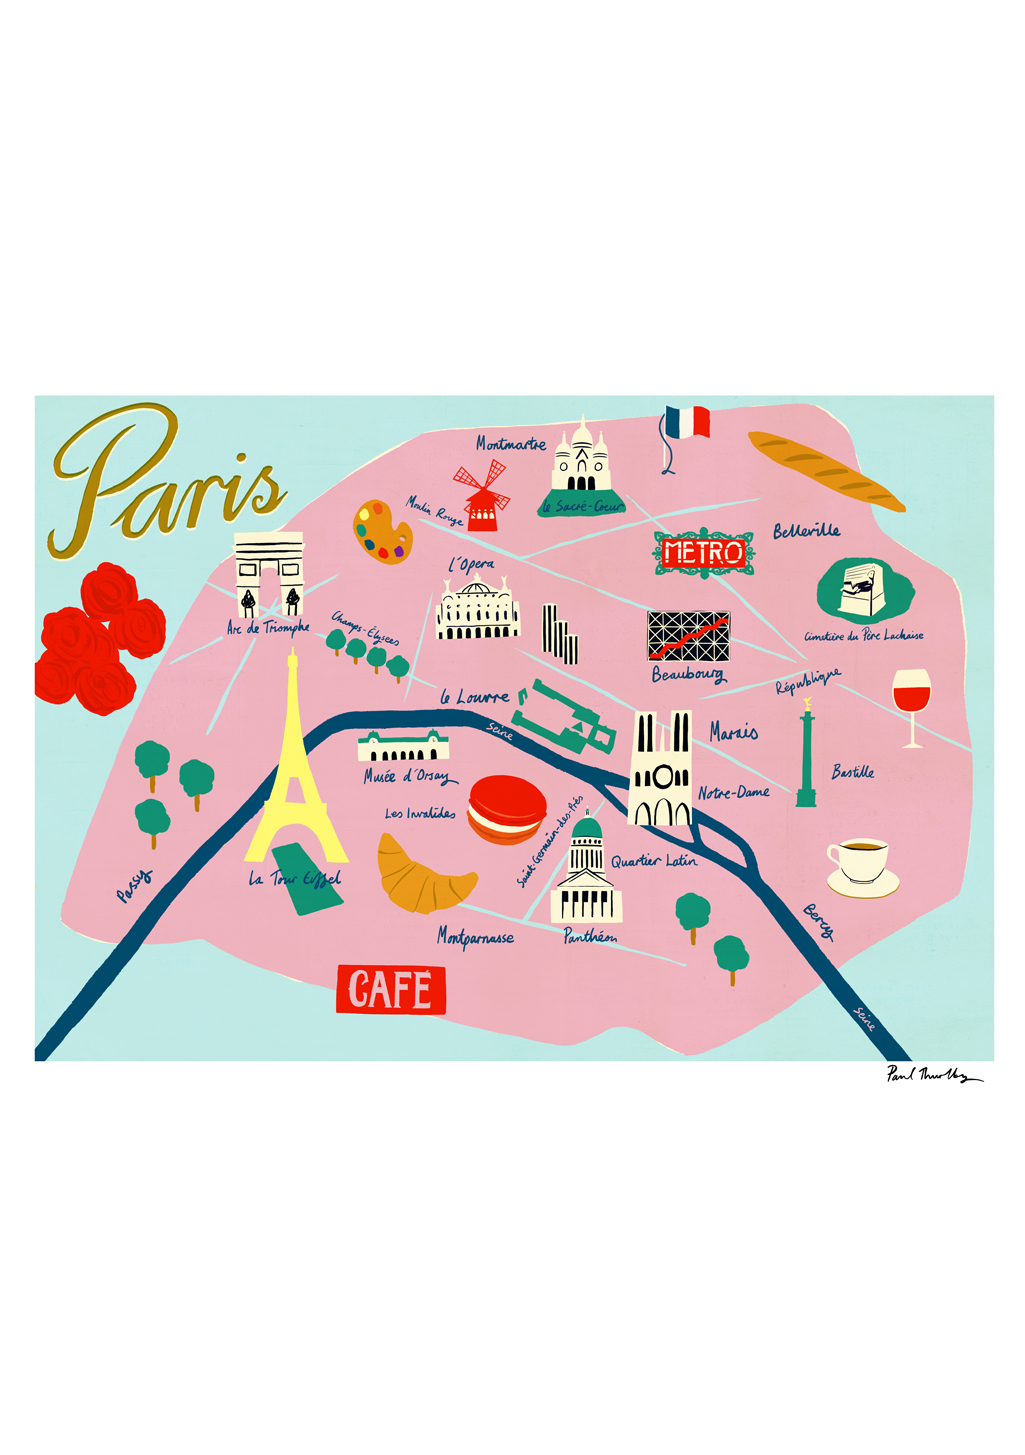 affiche-paris-paul-thurlby-map-de-paris-1